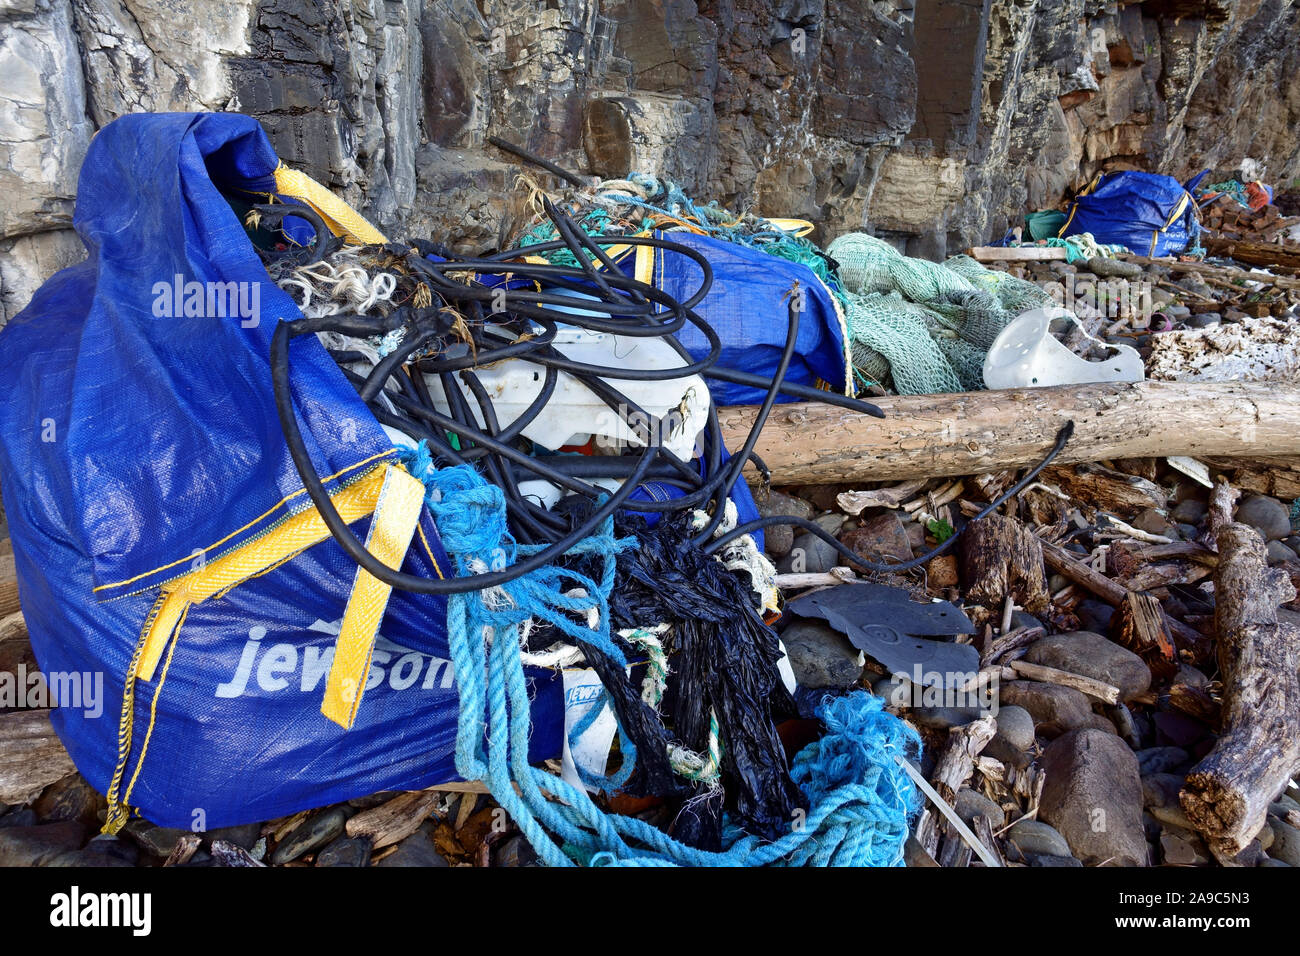 Le nettoyage de l'exercice propre plage de débris métalliques, plastique, bois échoué sur une plage éloignée sur l'île de Mull dans les Hébrides intérieures de l'Écosse Banque D'Images